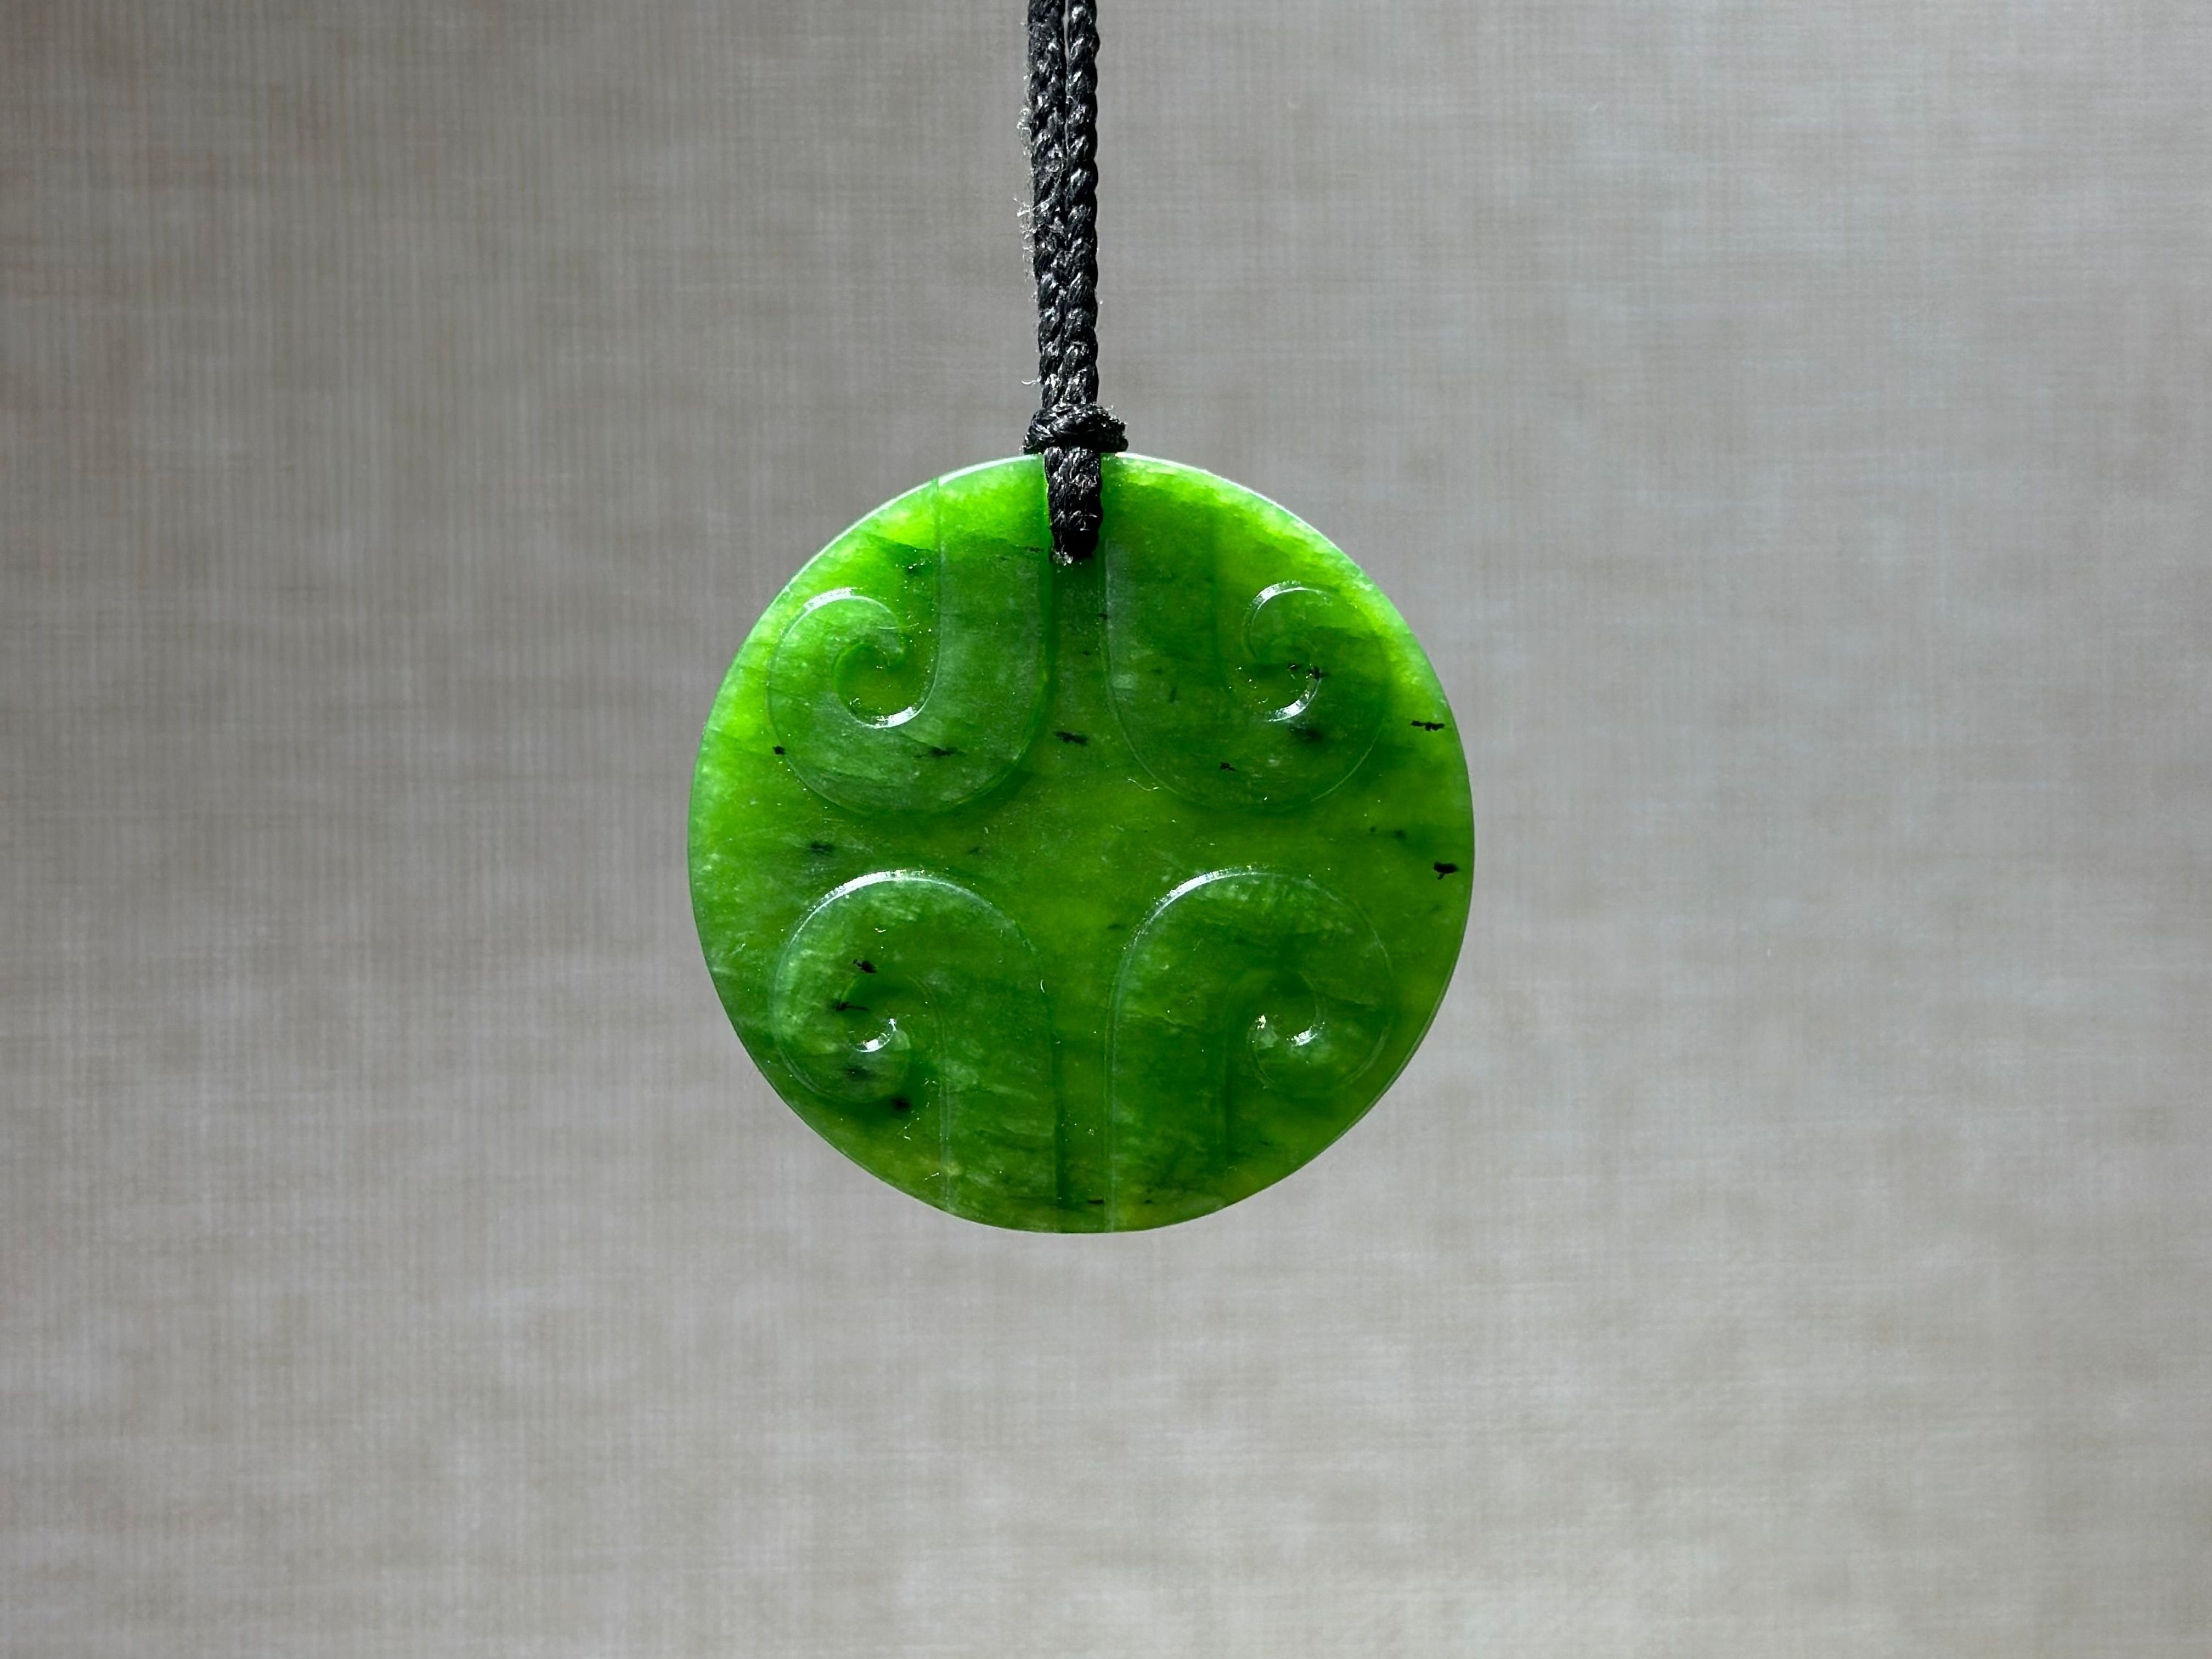 New Zealand Jade (Pounamu) Koru Design